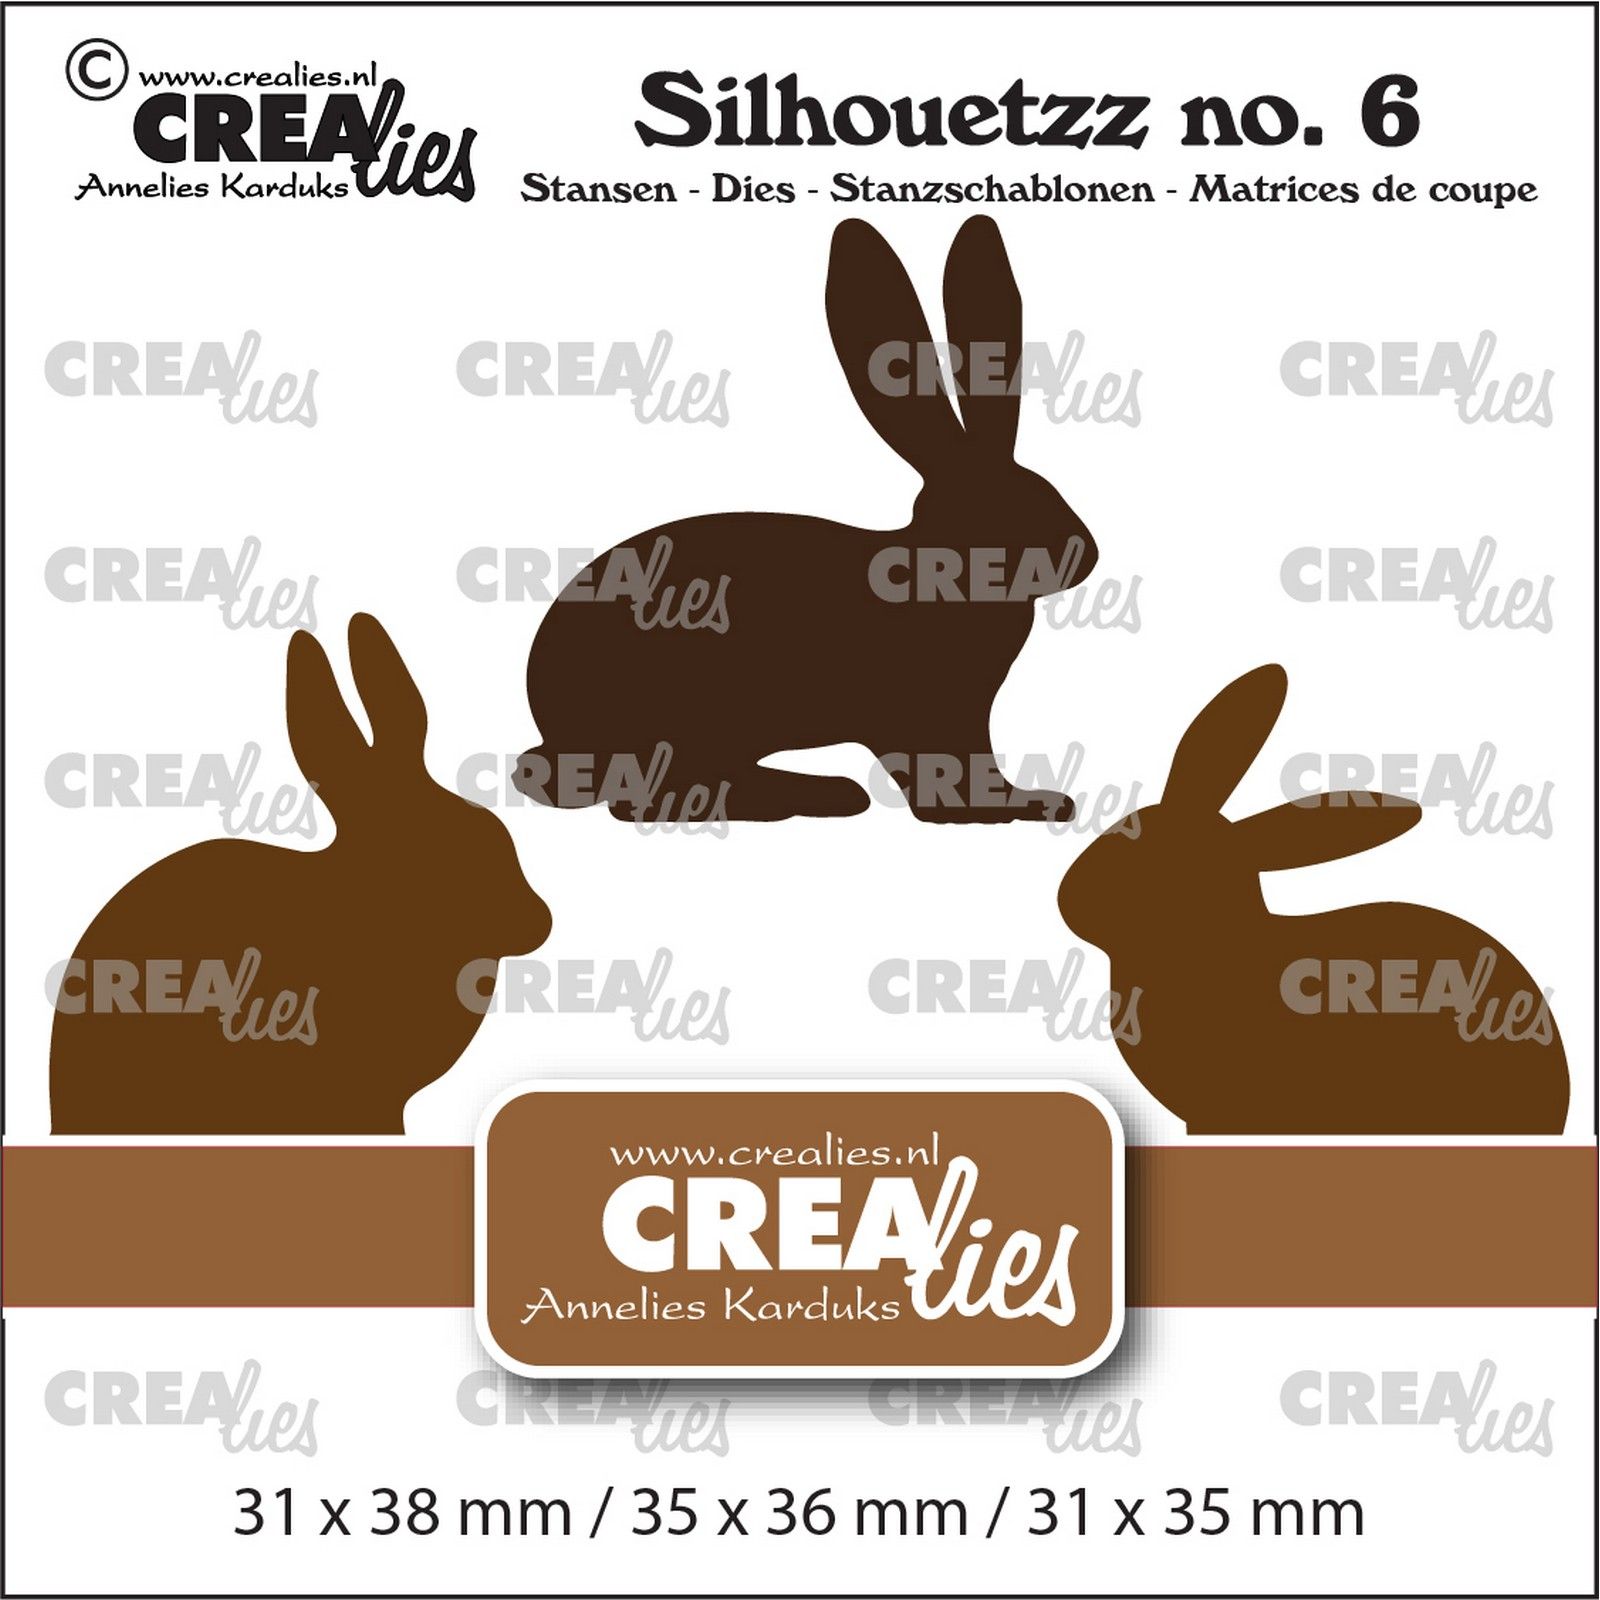 Crealies • Silhouetzz Plantilla de Corte Rabbits/Hares